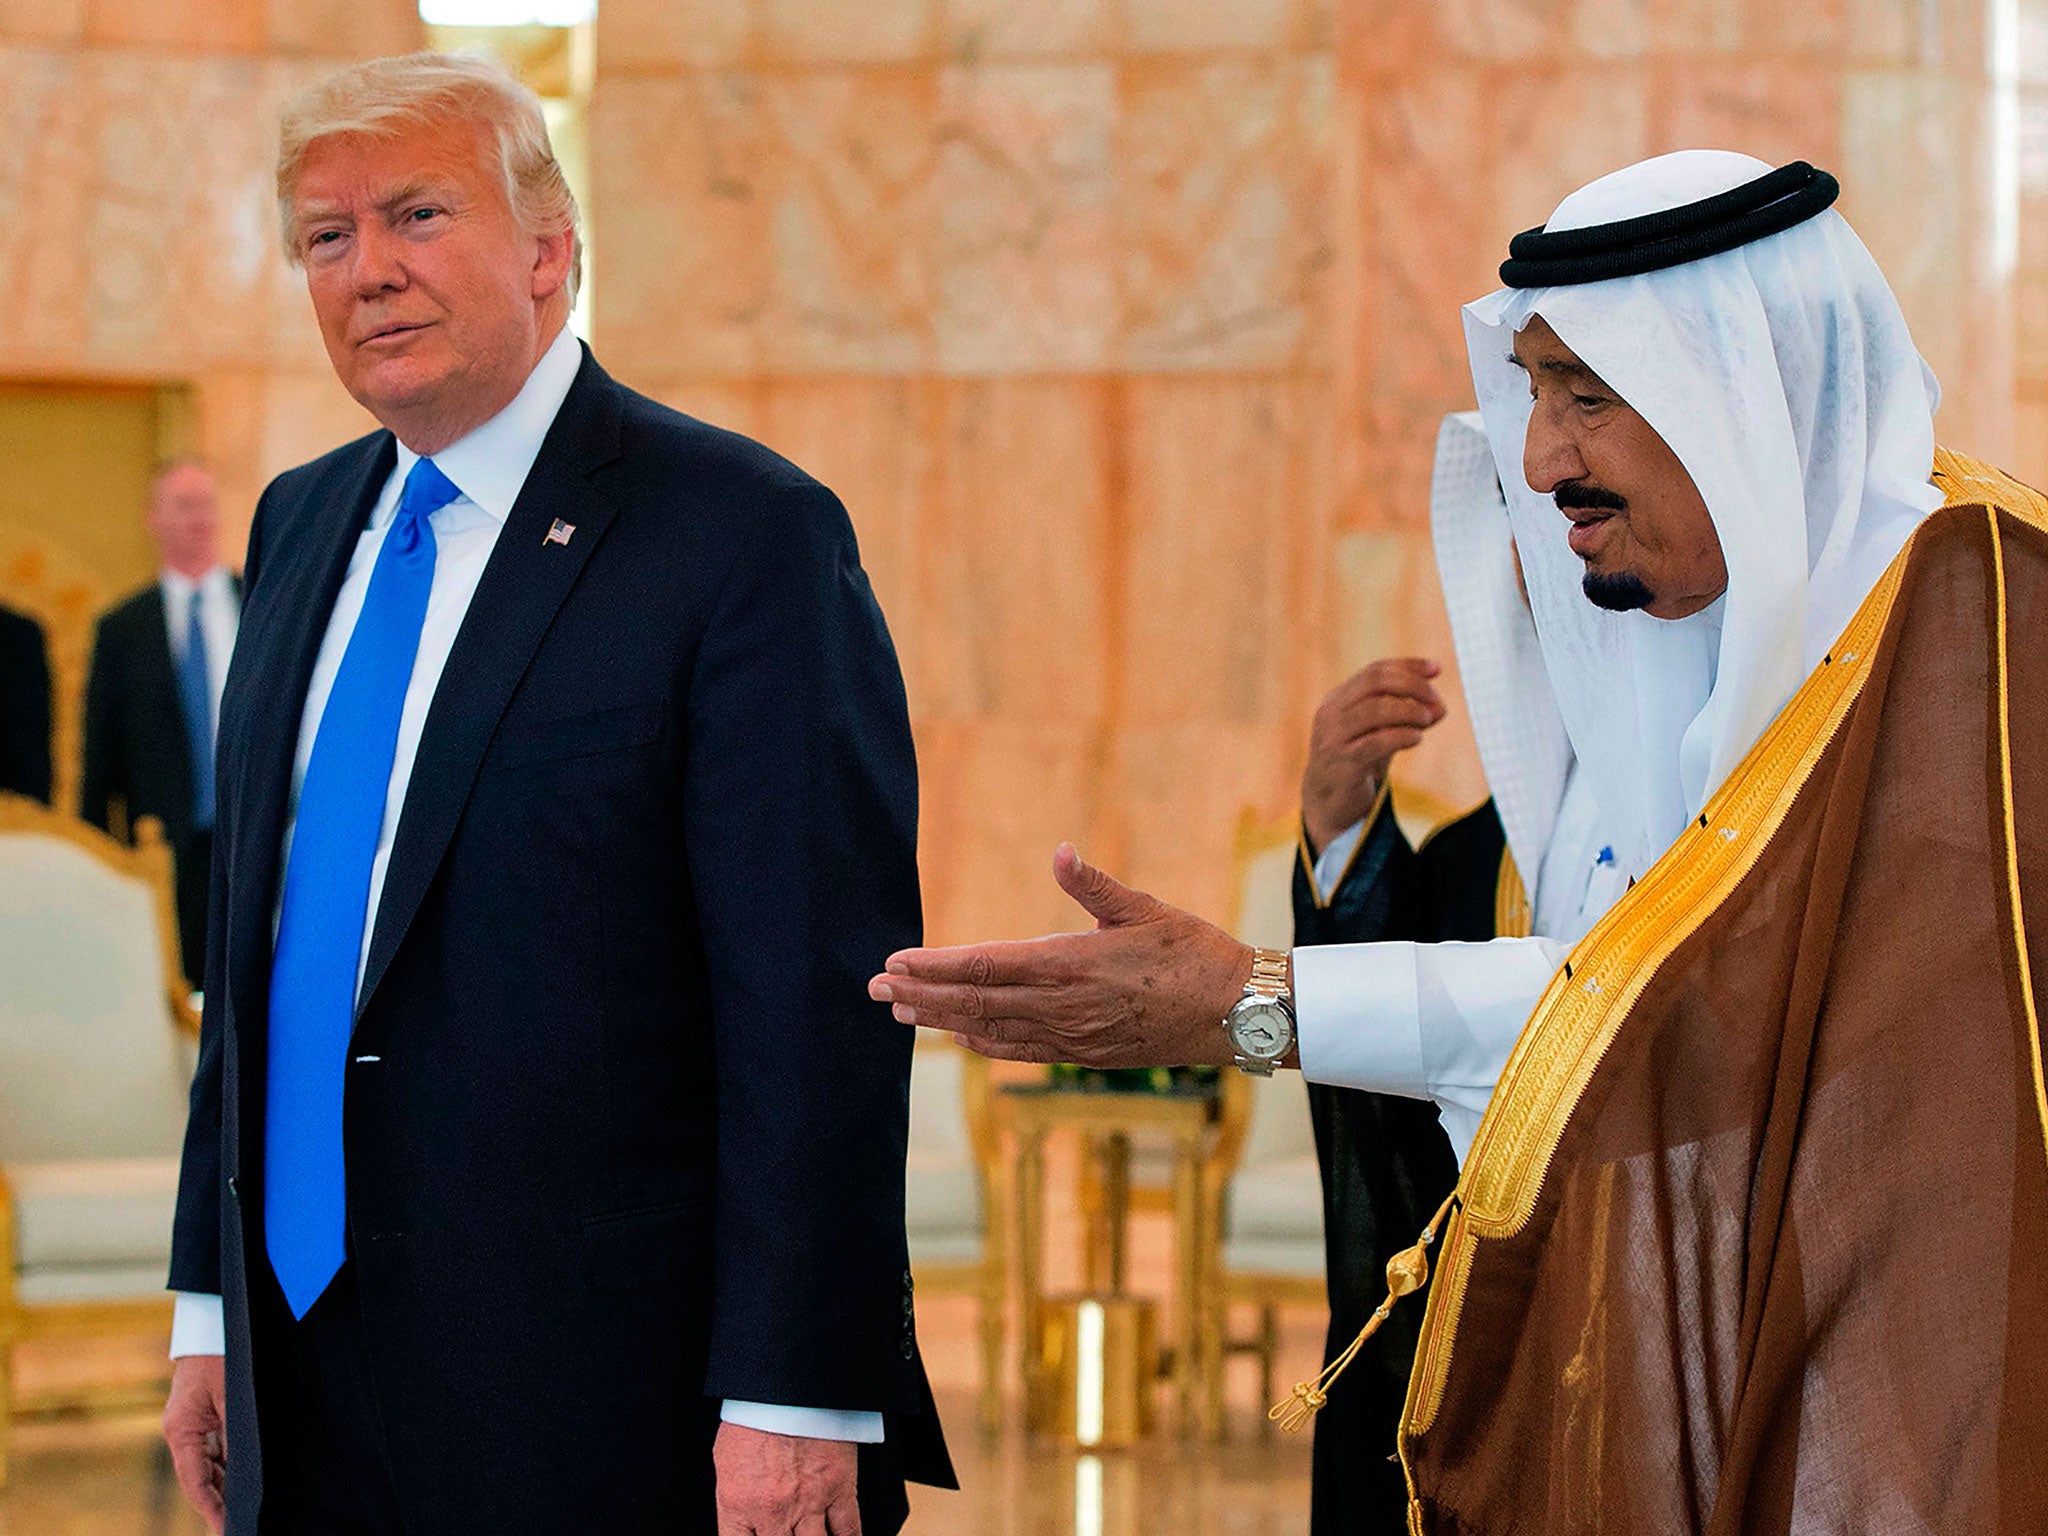 President Trump met with King Salman of Saudi Arabia in Riyadh earlier this year